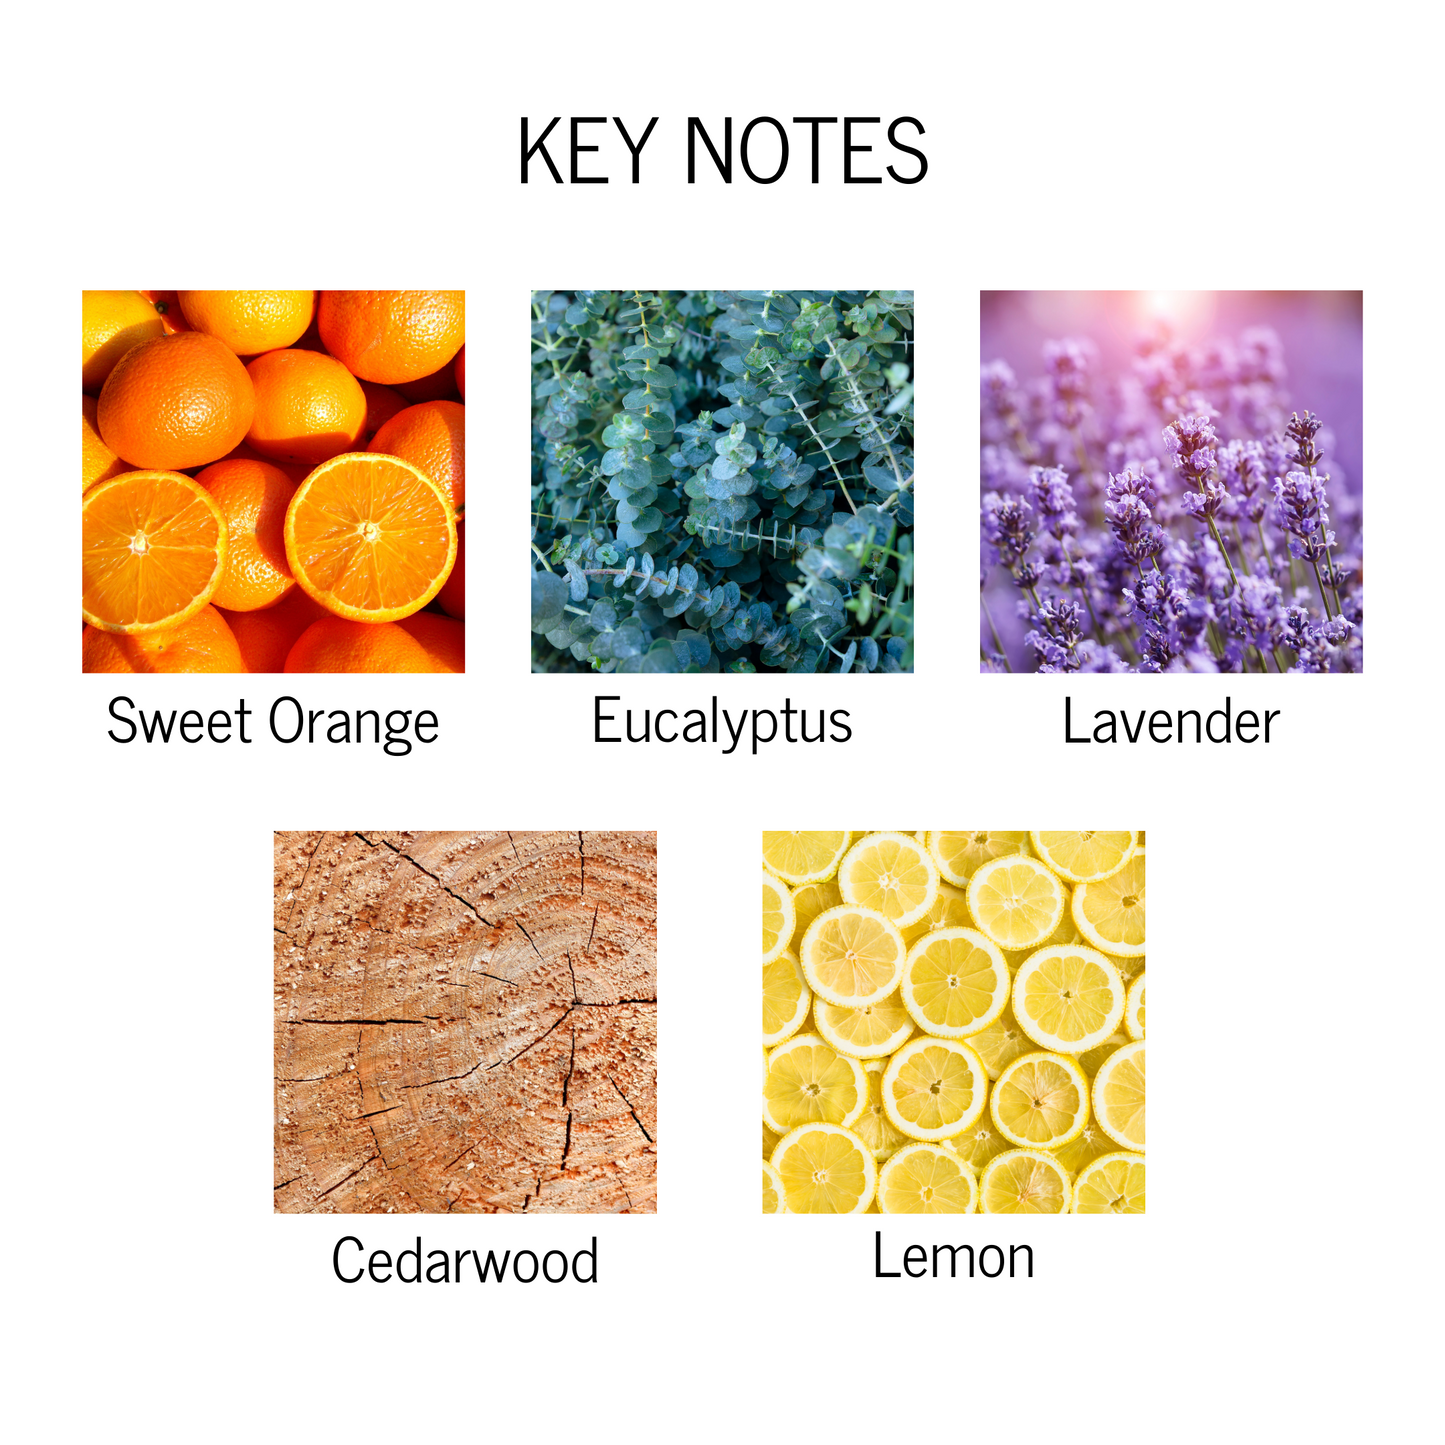 Key notes of sweet orange, eucalyptus, lavender, cedarwood and lemon.